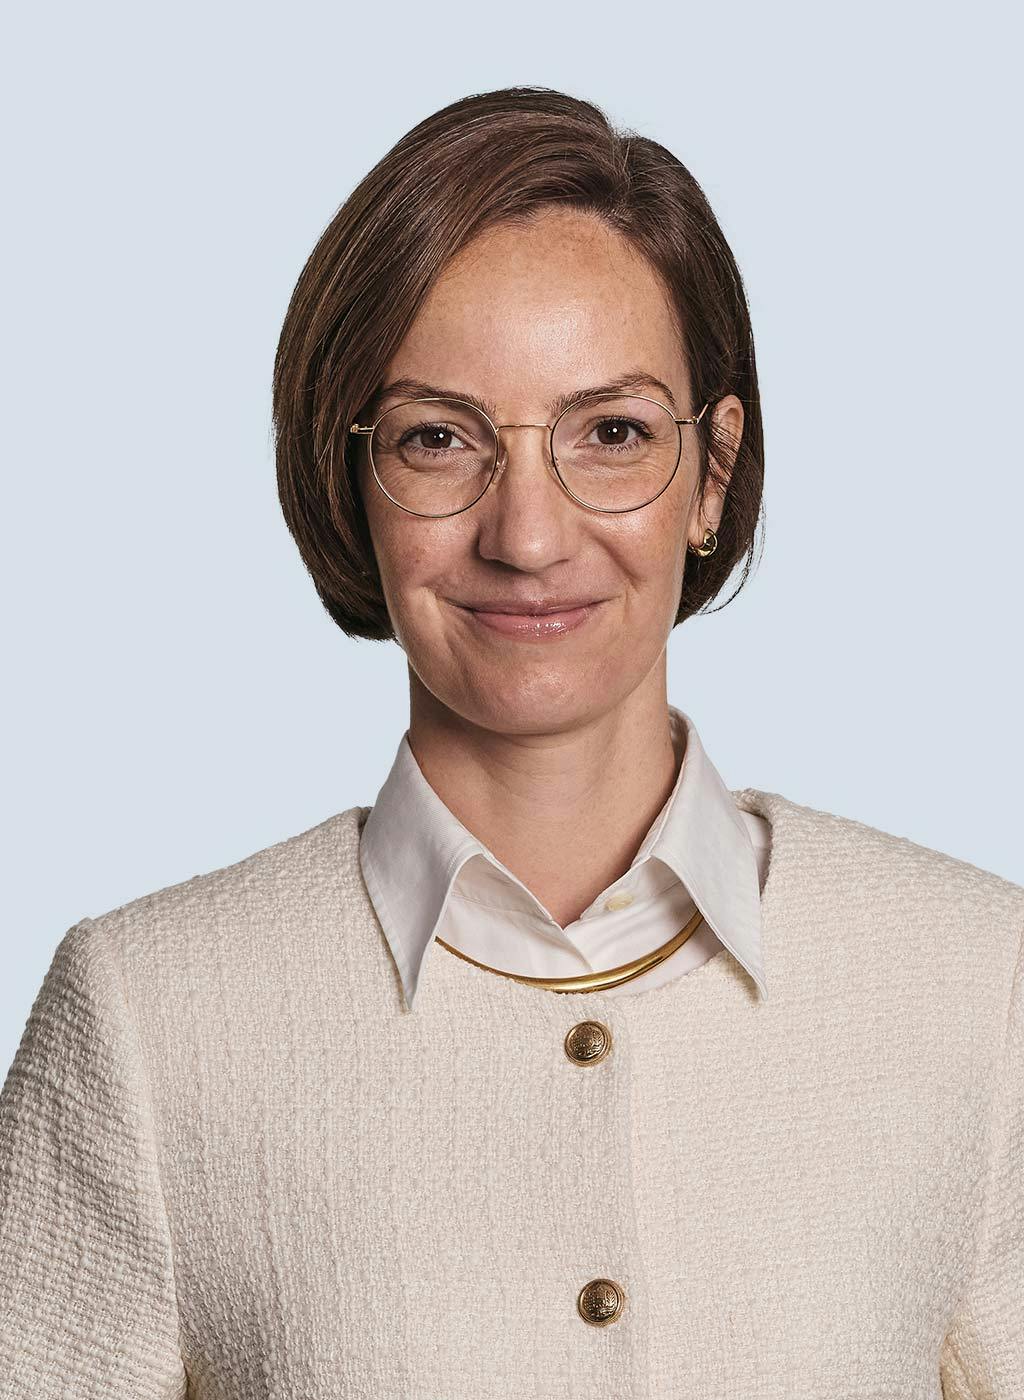 Sabine Spindler